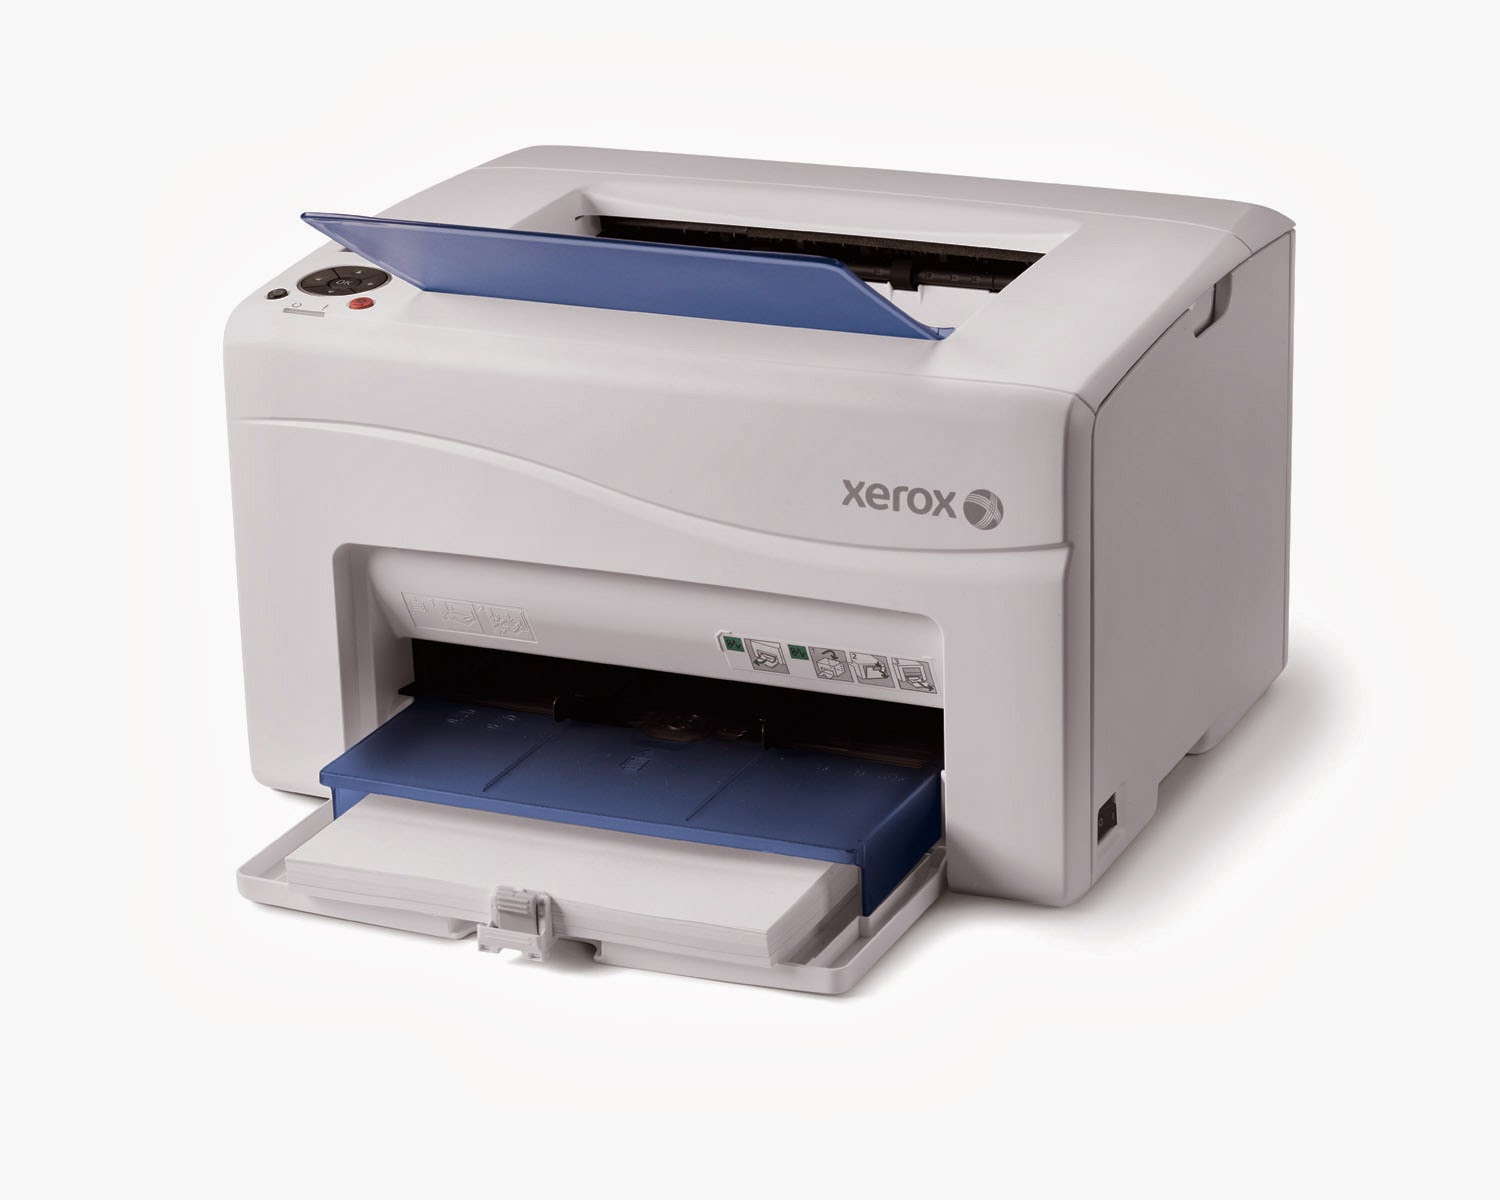 Xerox Phaser 8560 Printer